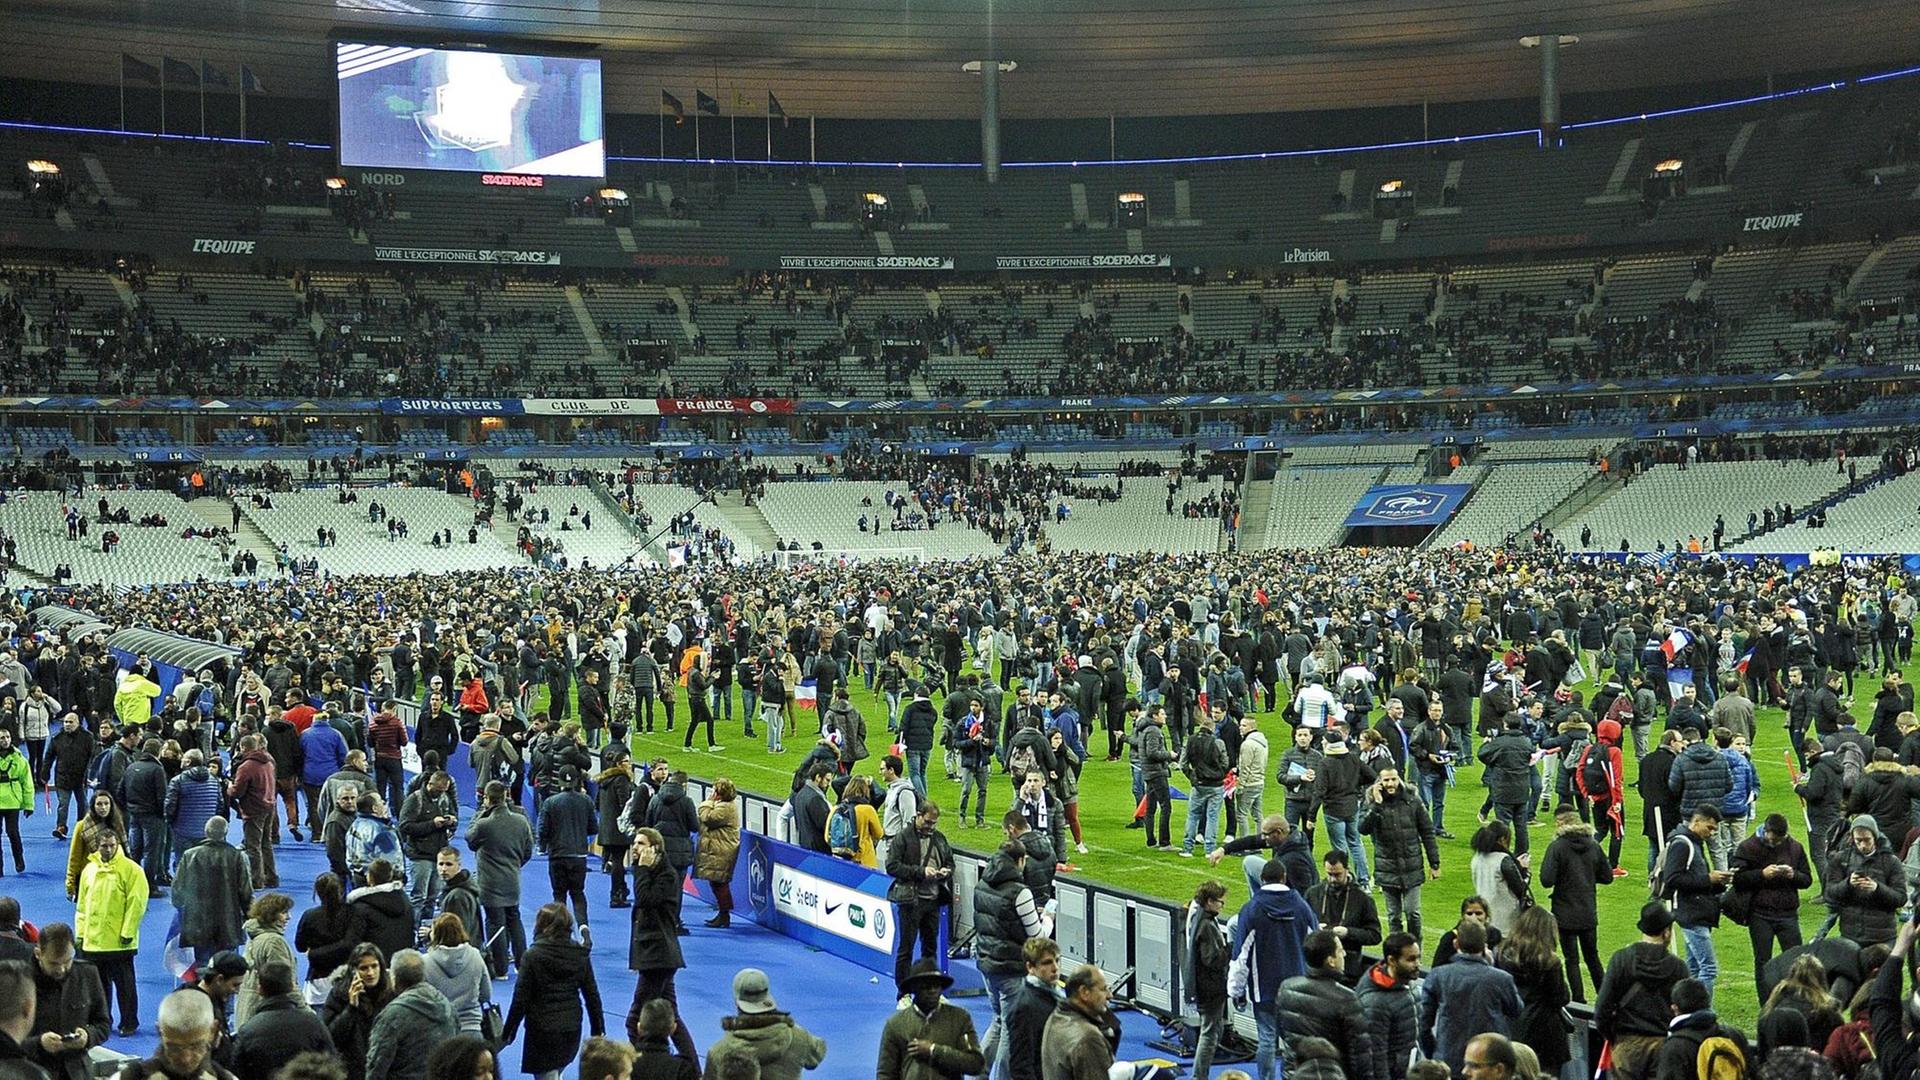 Hunderte Menschen auf dem Rasen des Stade de France, die Ränge sind größtenteils leer.